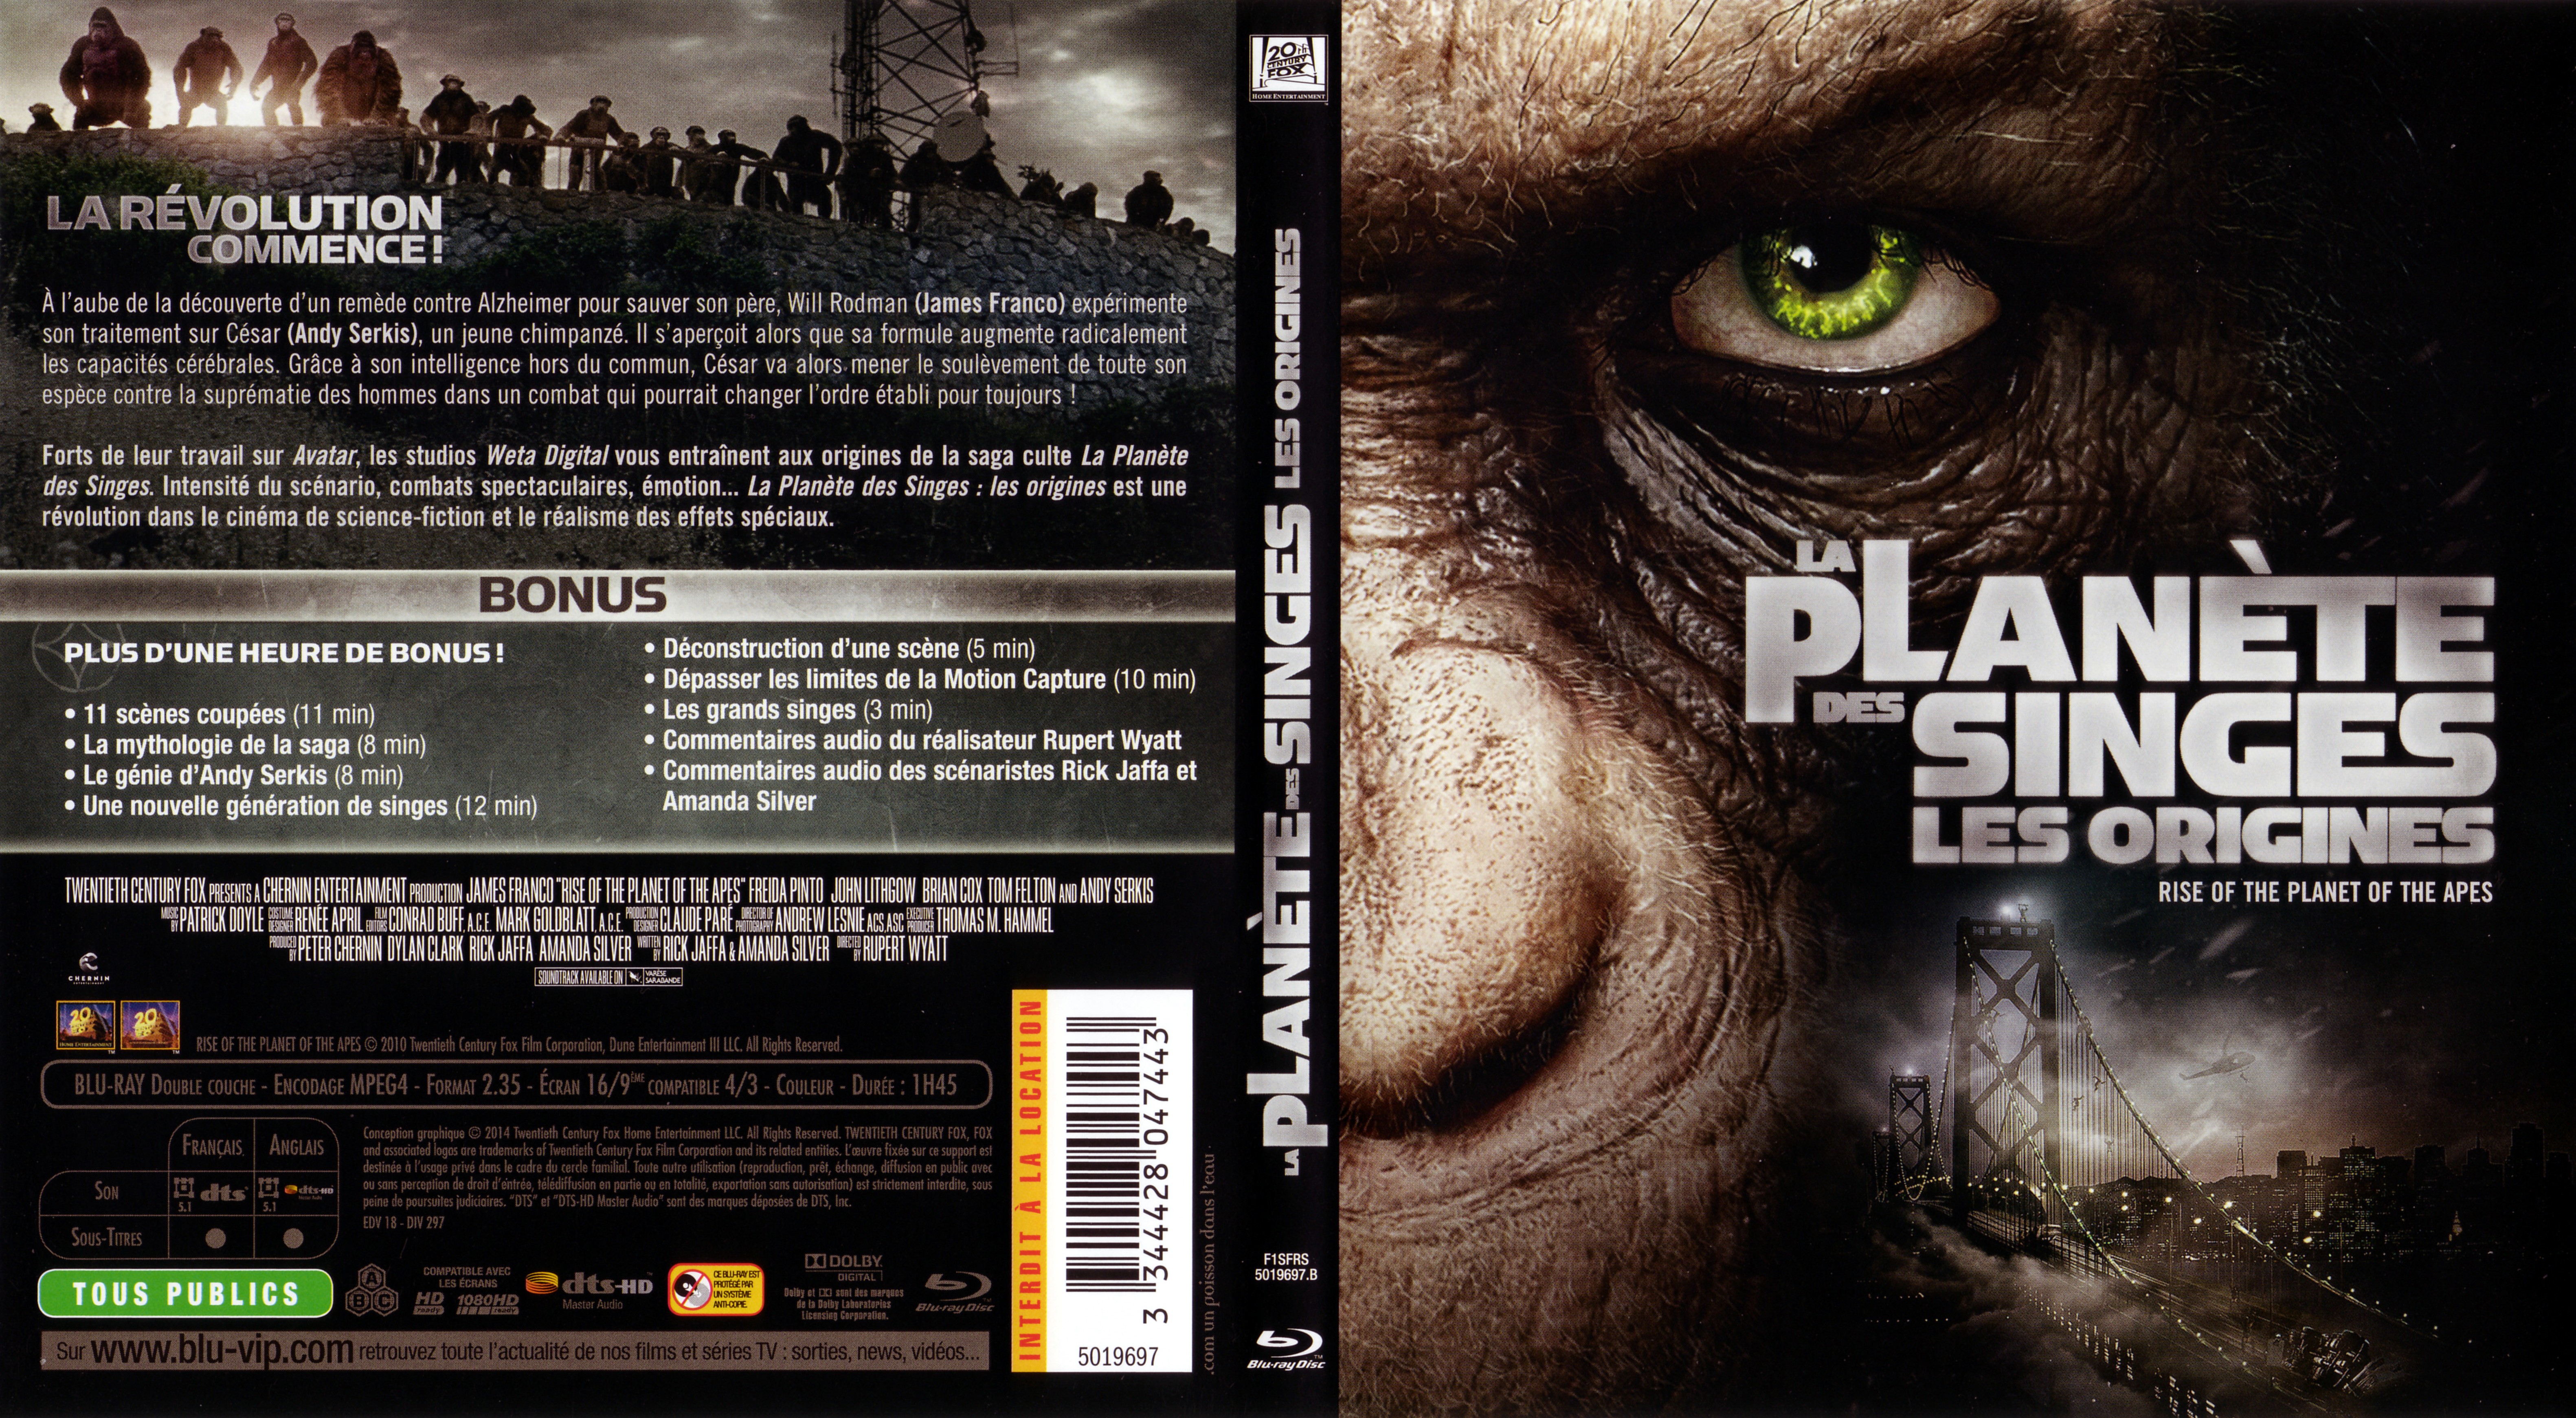 Jaquette DVD La Plante des singes : les origines (BLU-RAY) v4